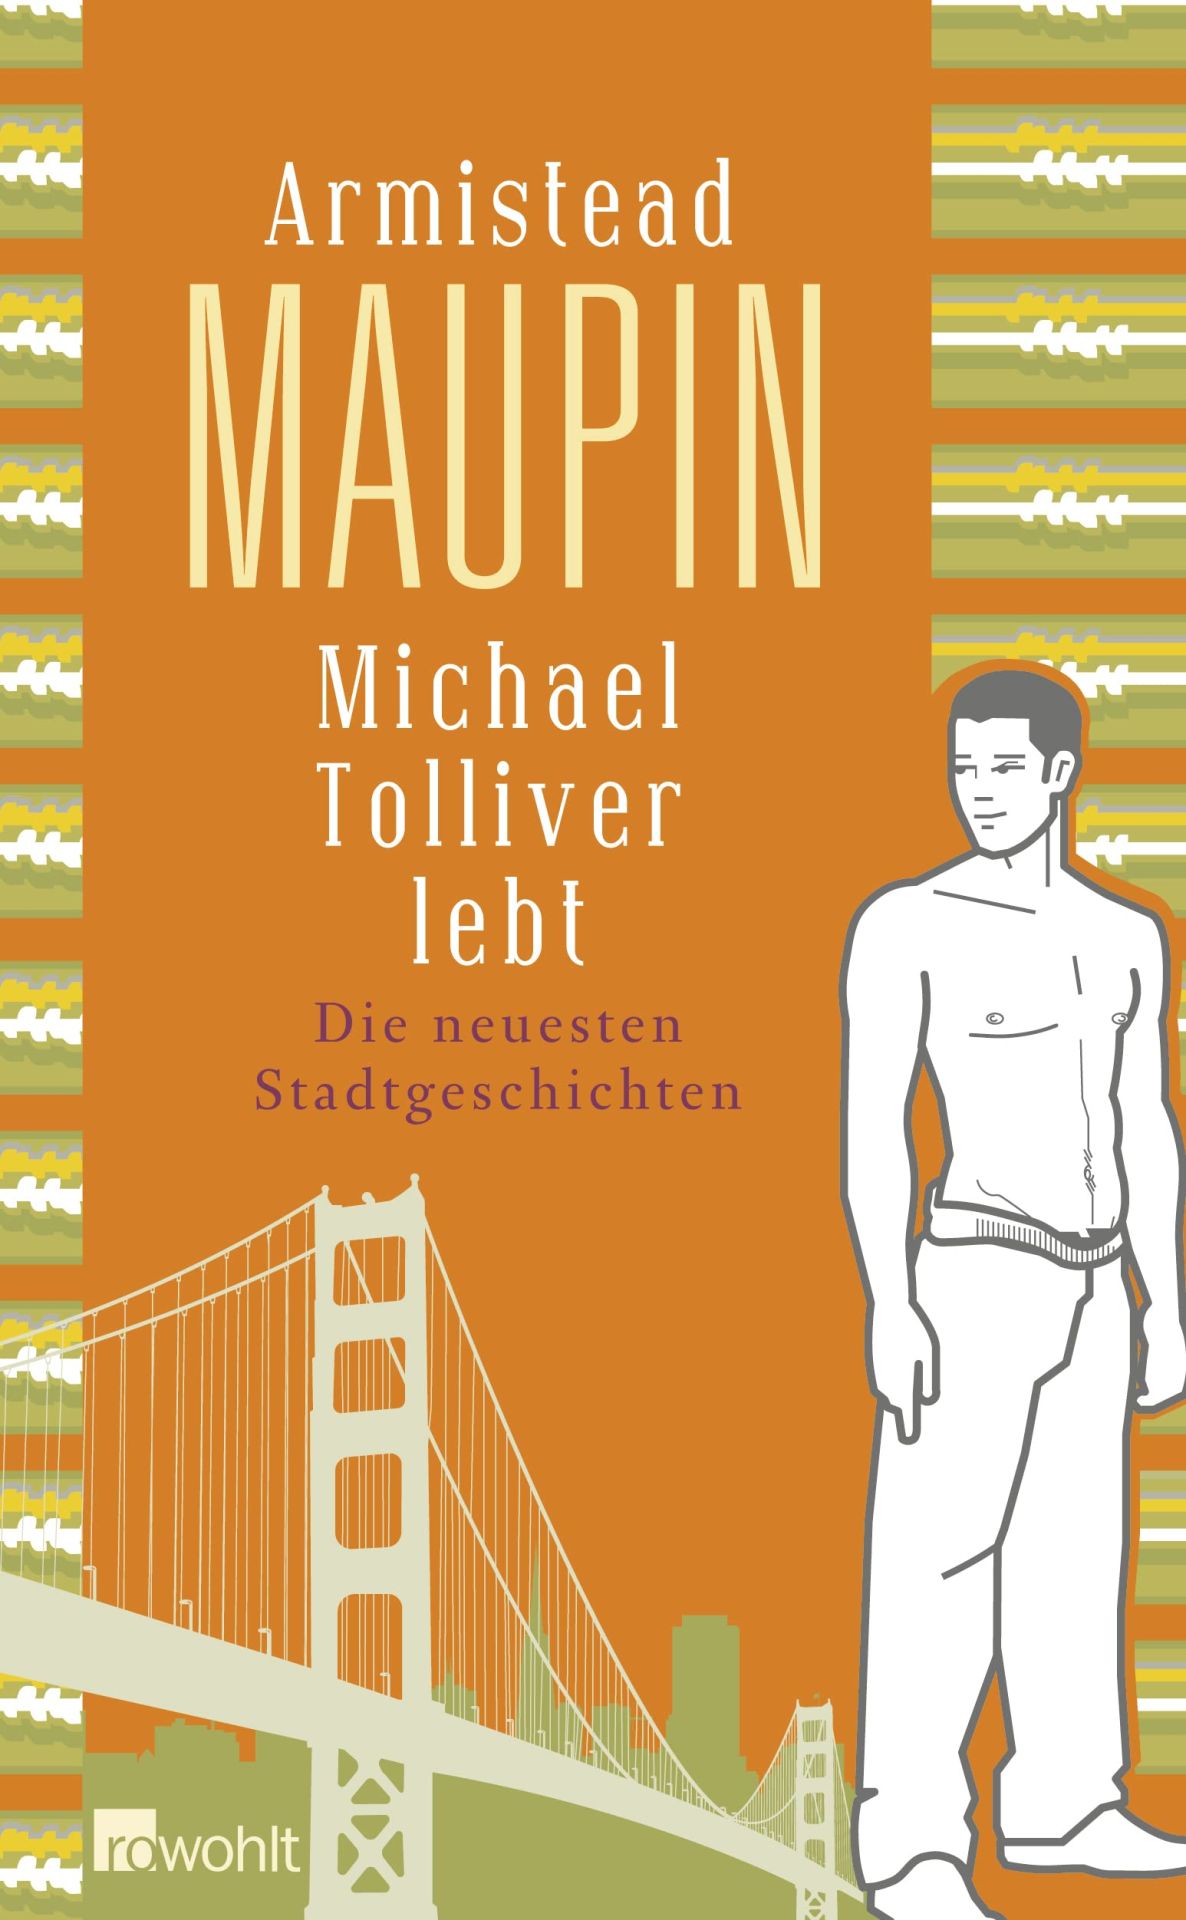 Michael Tolliver lebt: Die neuesten Stadtgeschichten die neuesten Stadtgeschichten - Kellner, Michael und Armistead Maupin